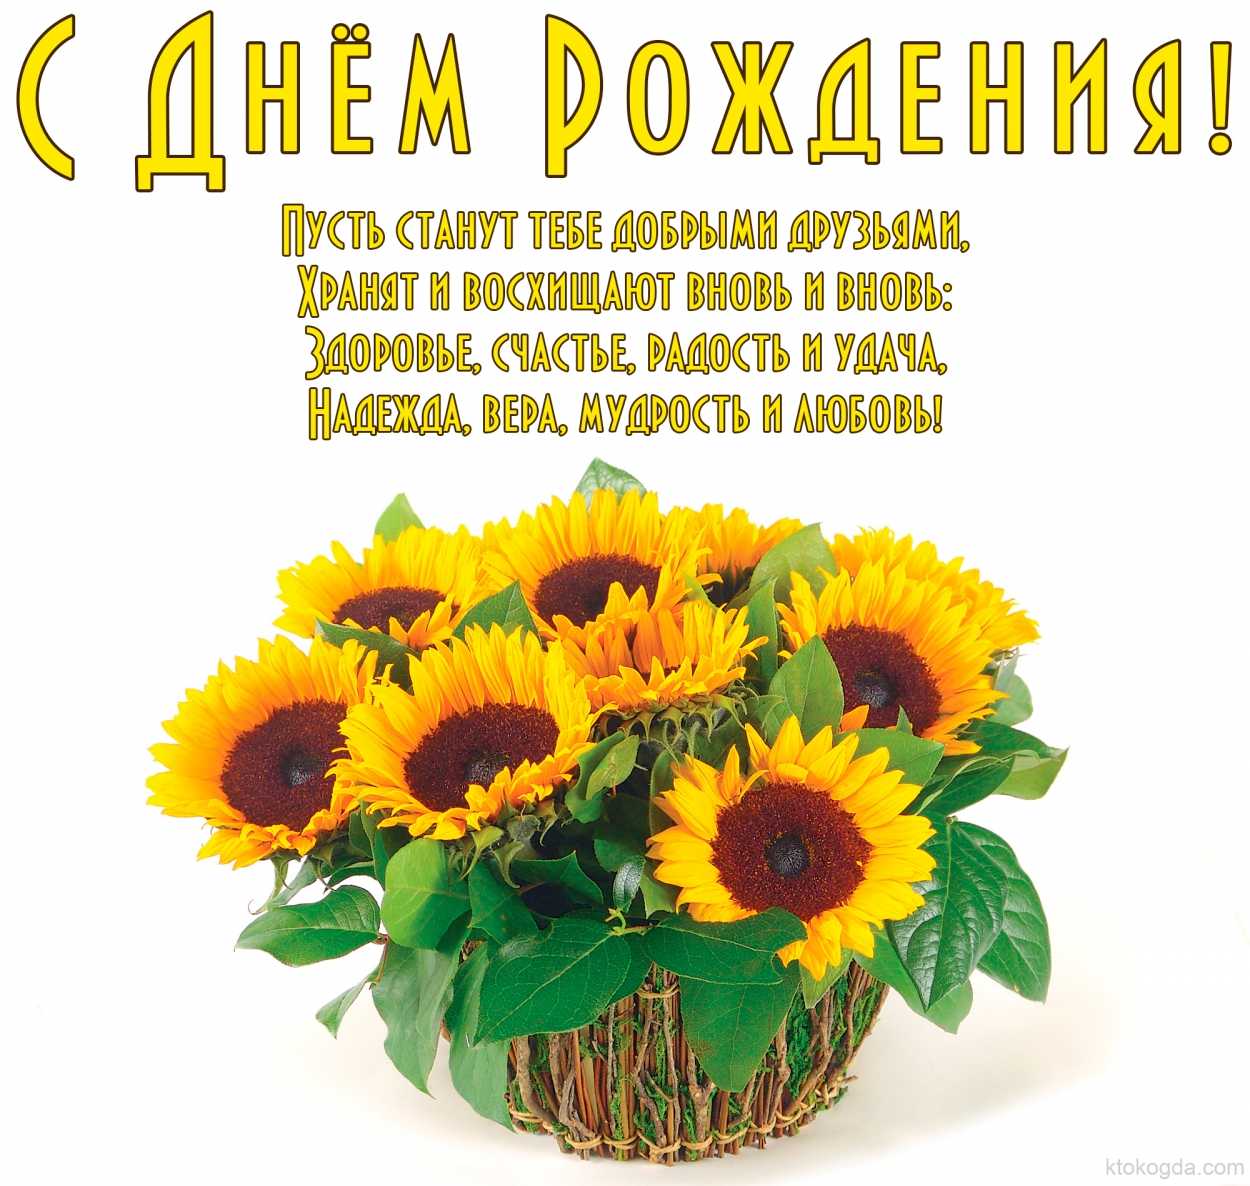 Красивые поздравления с днём рождения женщине ~ поздравинский - агрегатор поздравлений для всех праздников